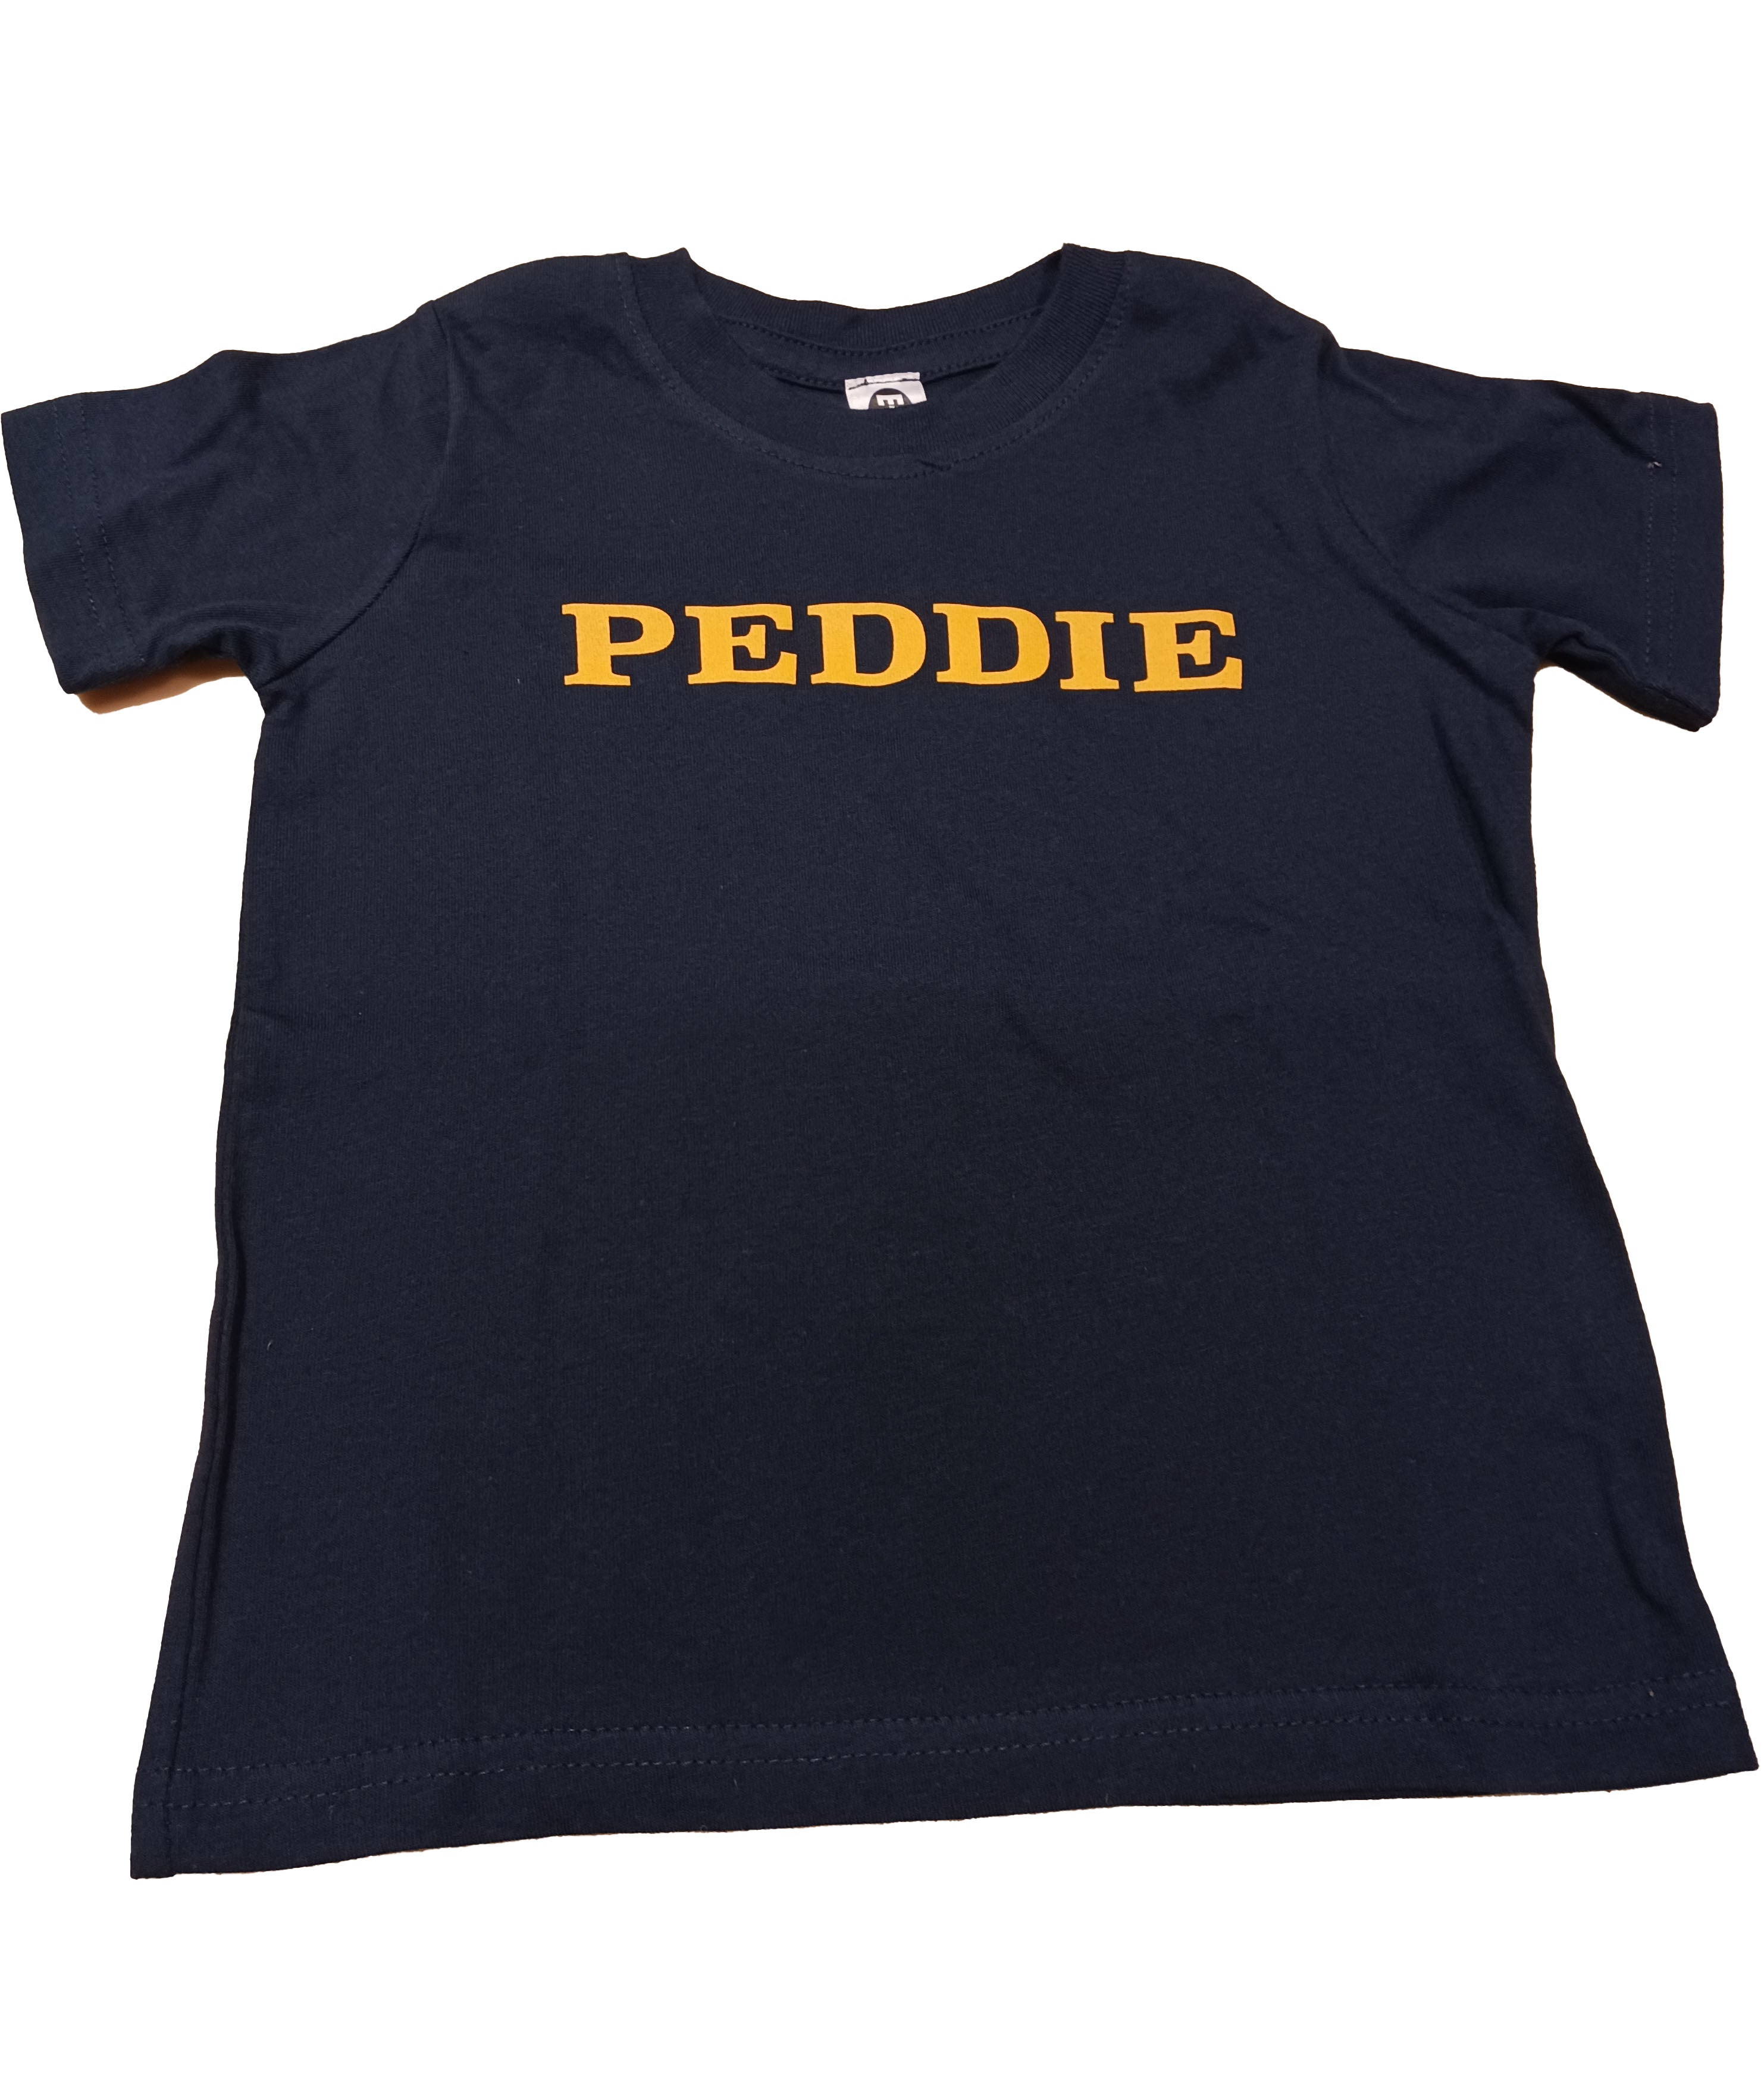 Peddie Toddler Short Sleeve Tee Shirt